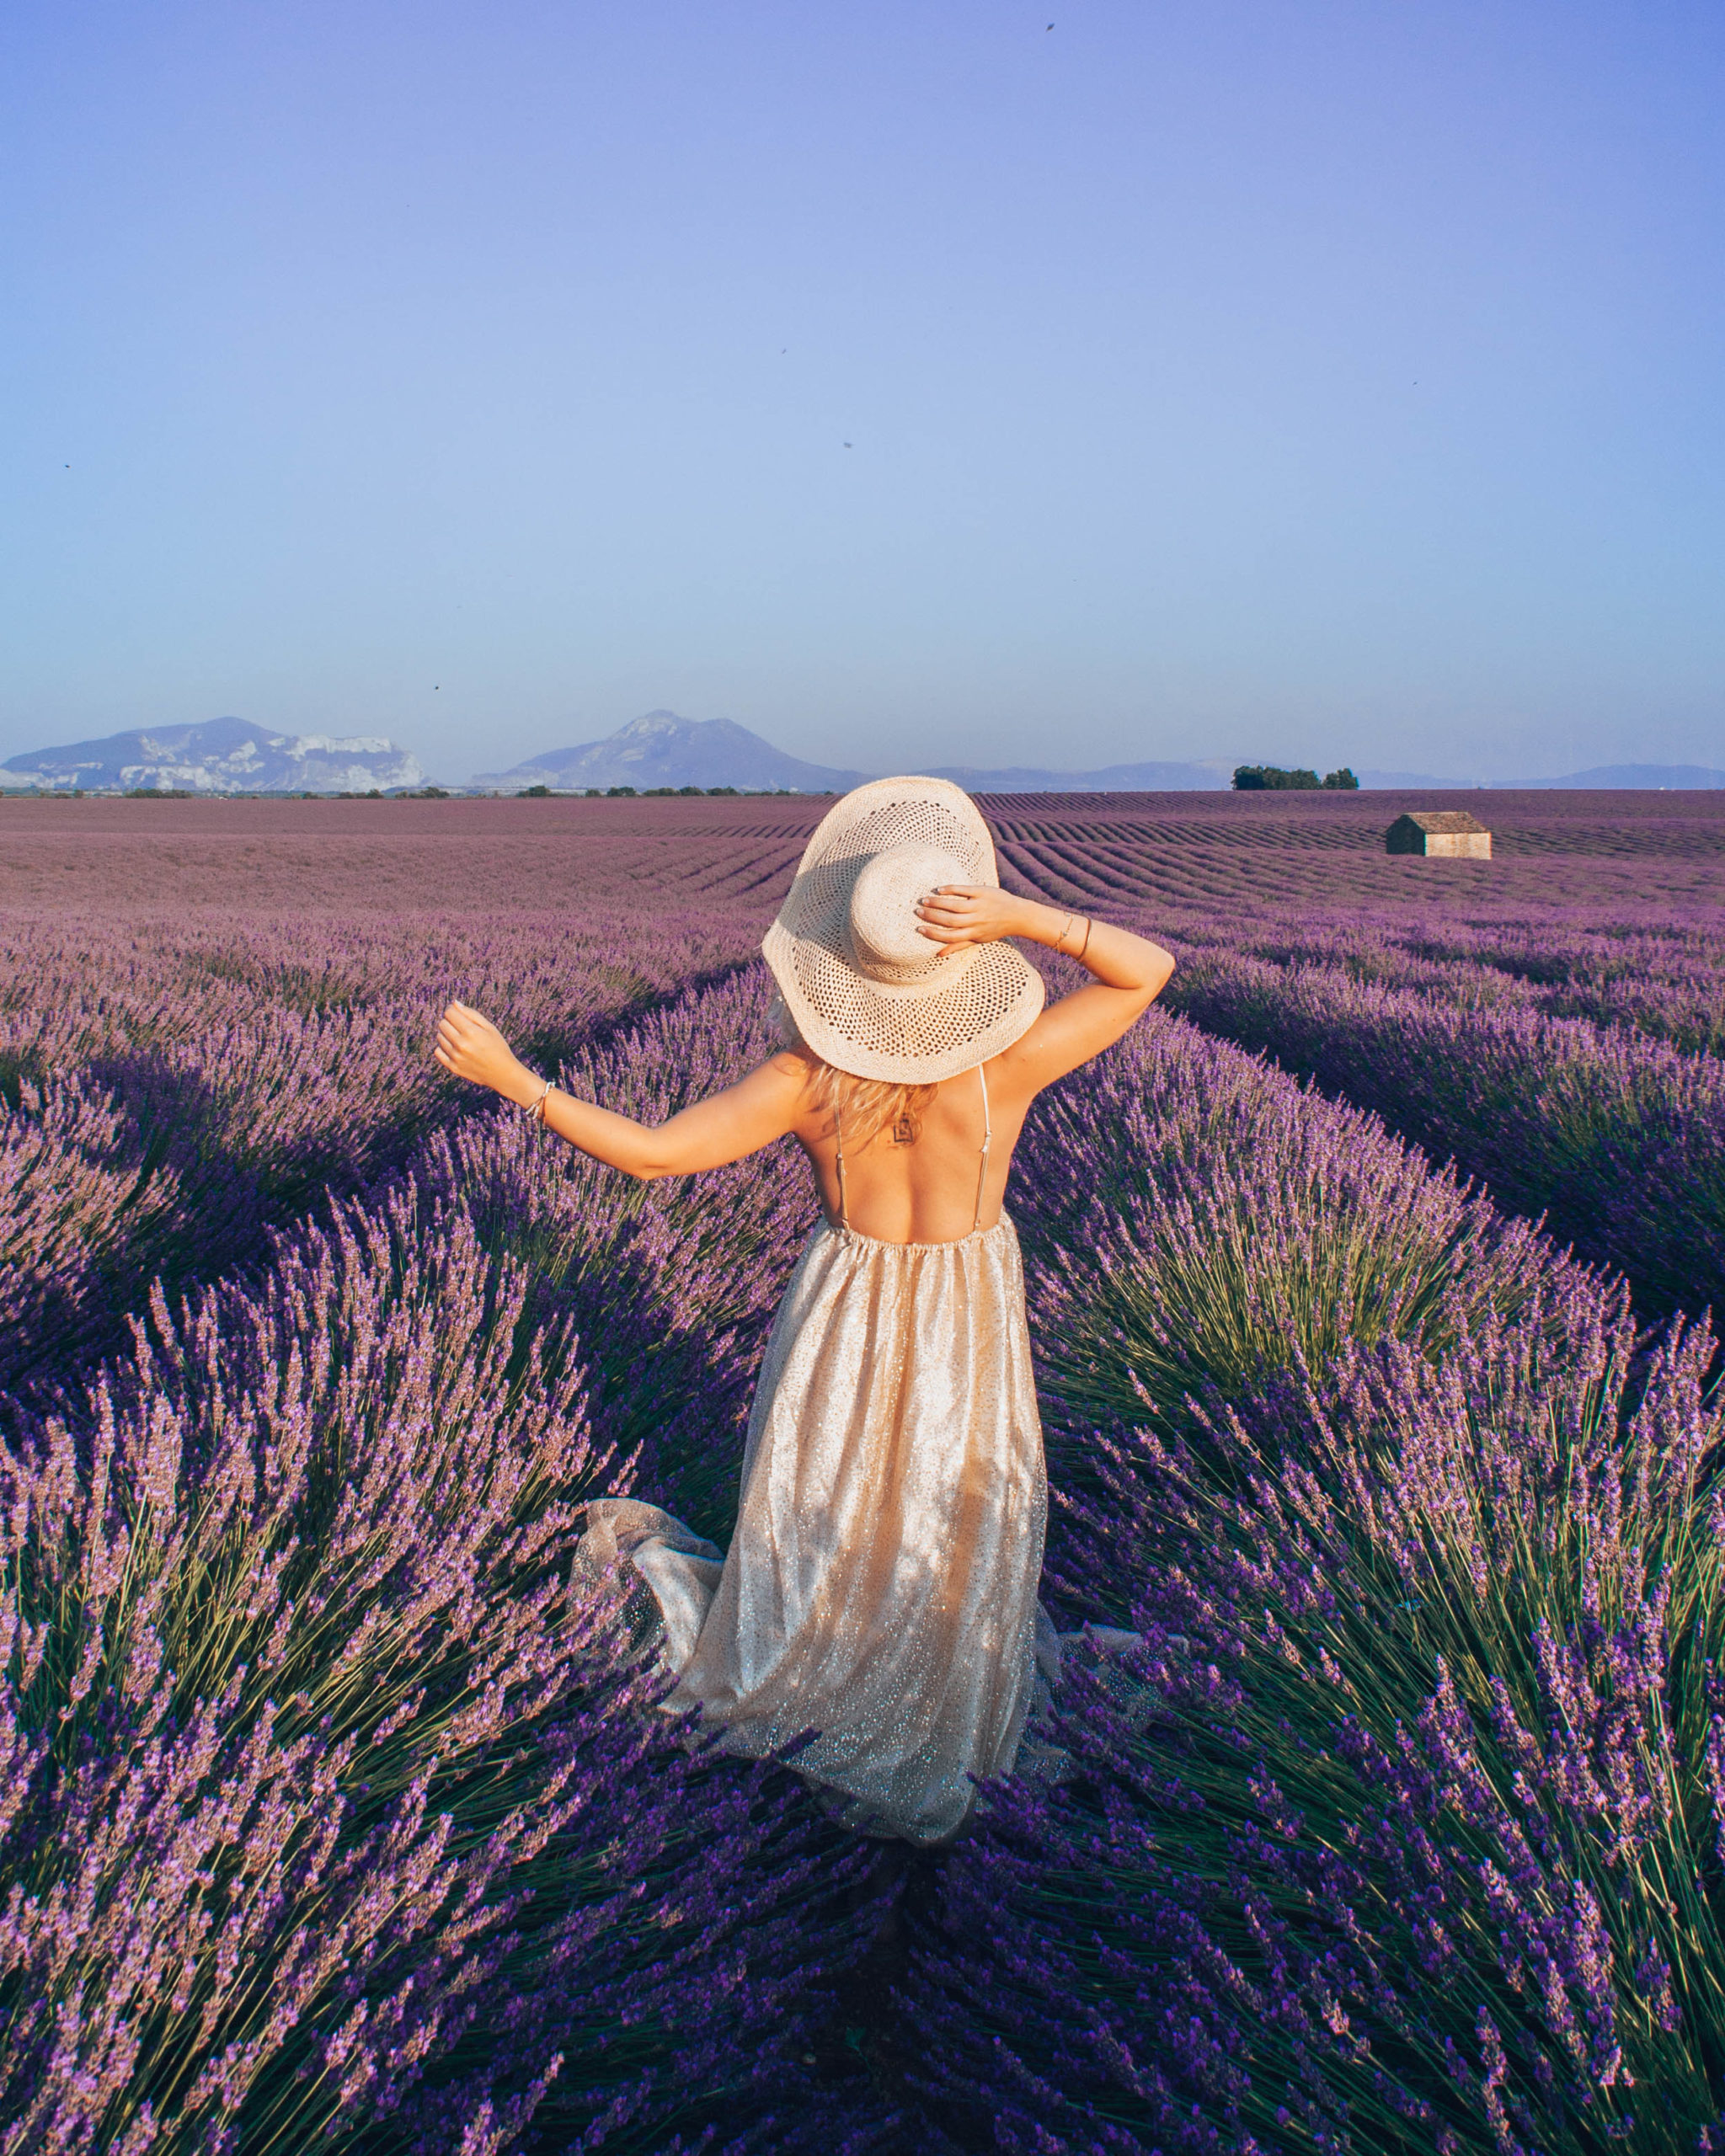 Cảm nhận cảm giác tuyệt vời khi trải nghiệm Lavender fields of Provence qua ảnh. Với những đồng hoa tím như mơ trải dài đến mất tận mắt, chắc chắn bạn sẽ không thể nào quên được trải nghiệm này.